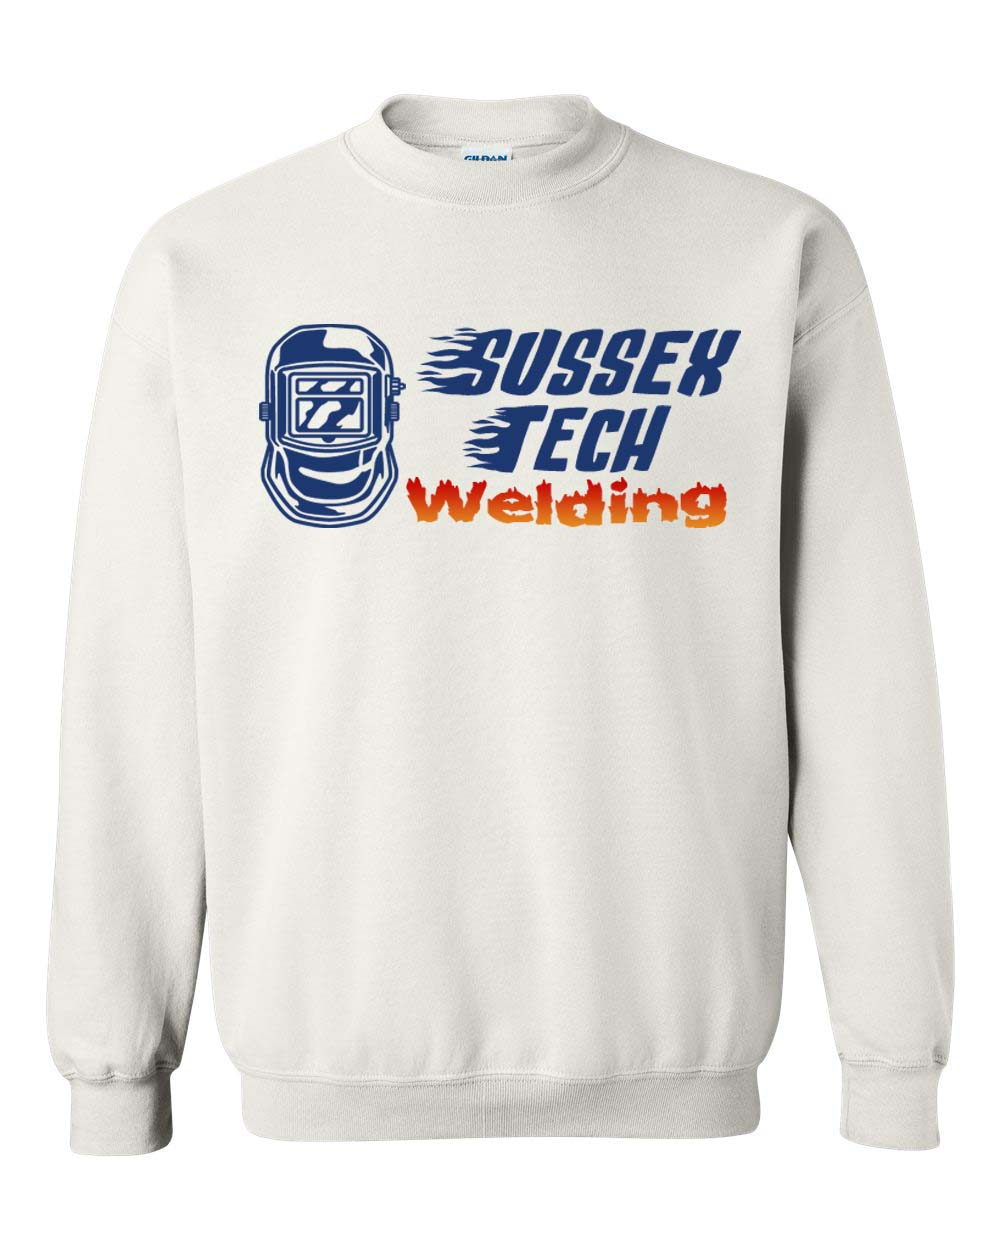 Sussex Tech Welding Design 4 non hooded sweatshirt